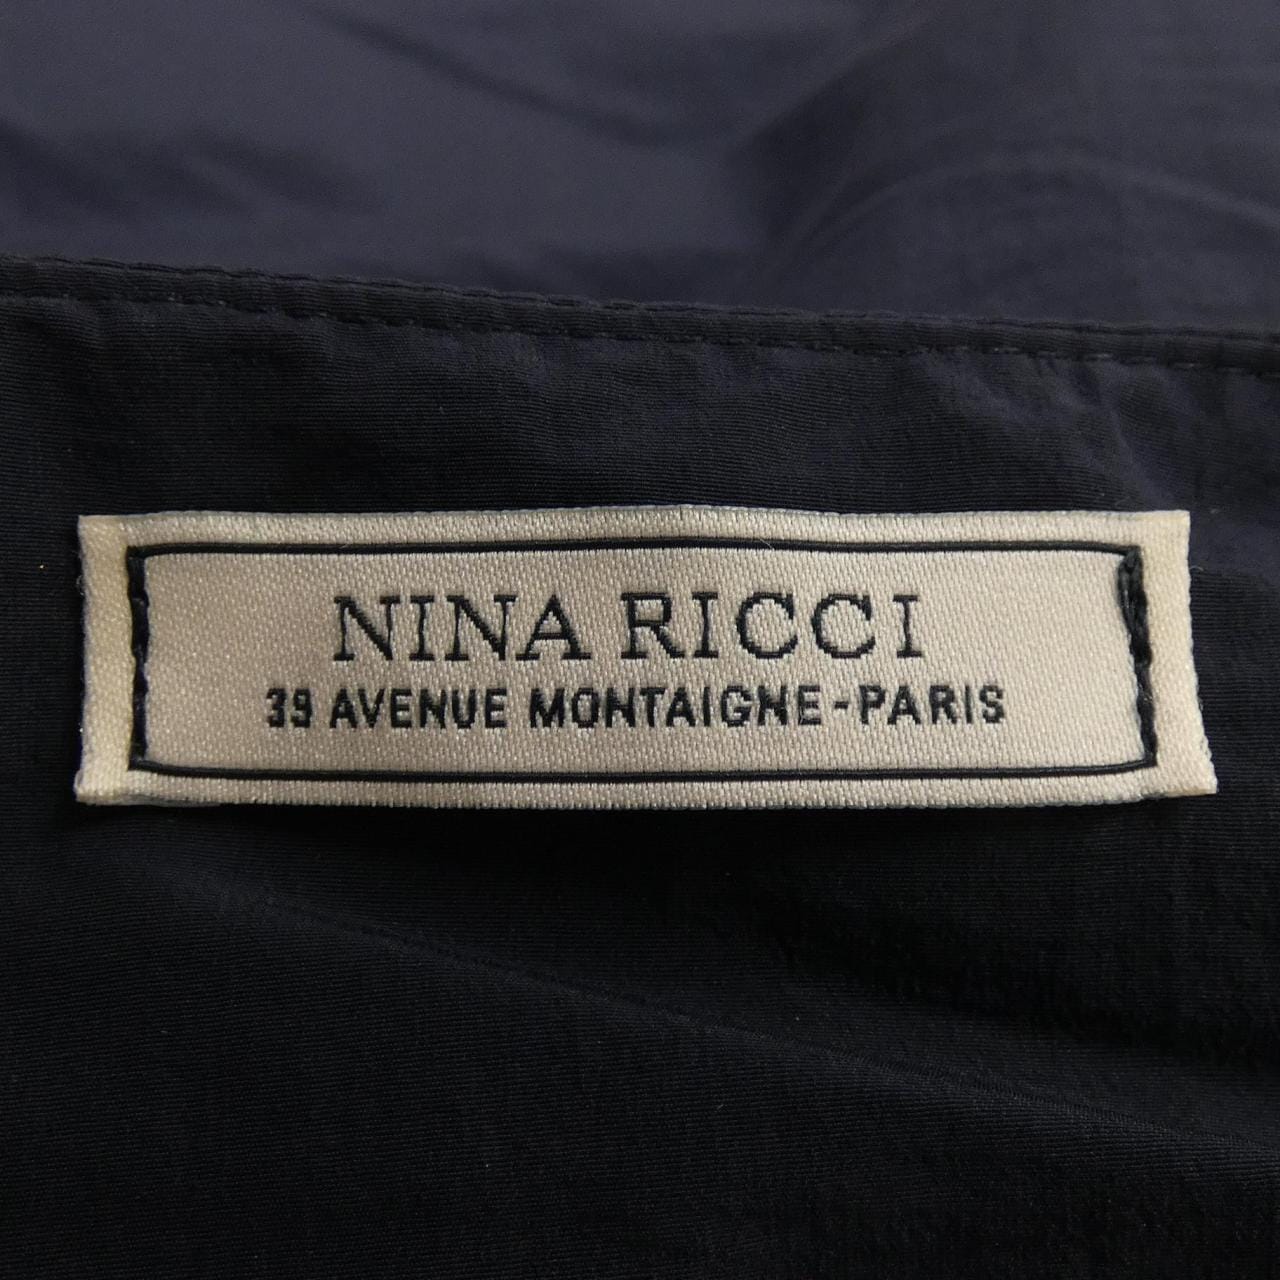 ニナリッチ NINA RICCI スカート